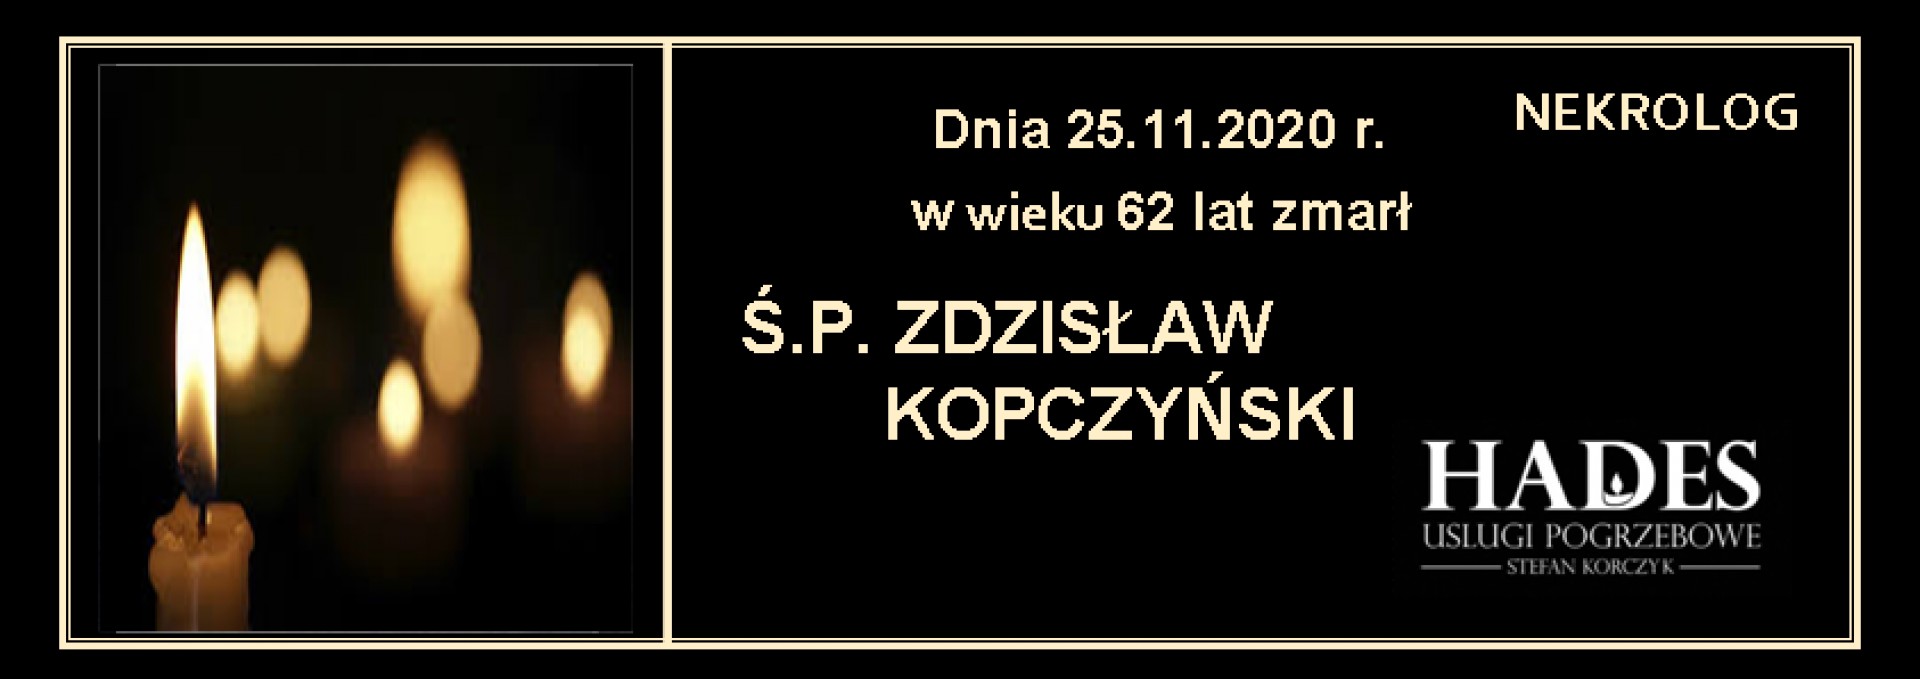 Ś.P.Zdzisław Kopczyński